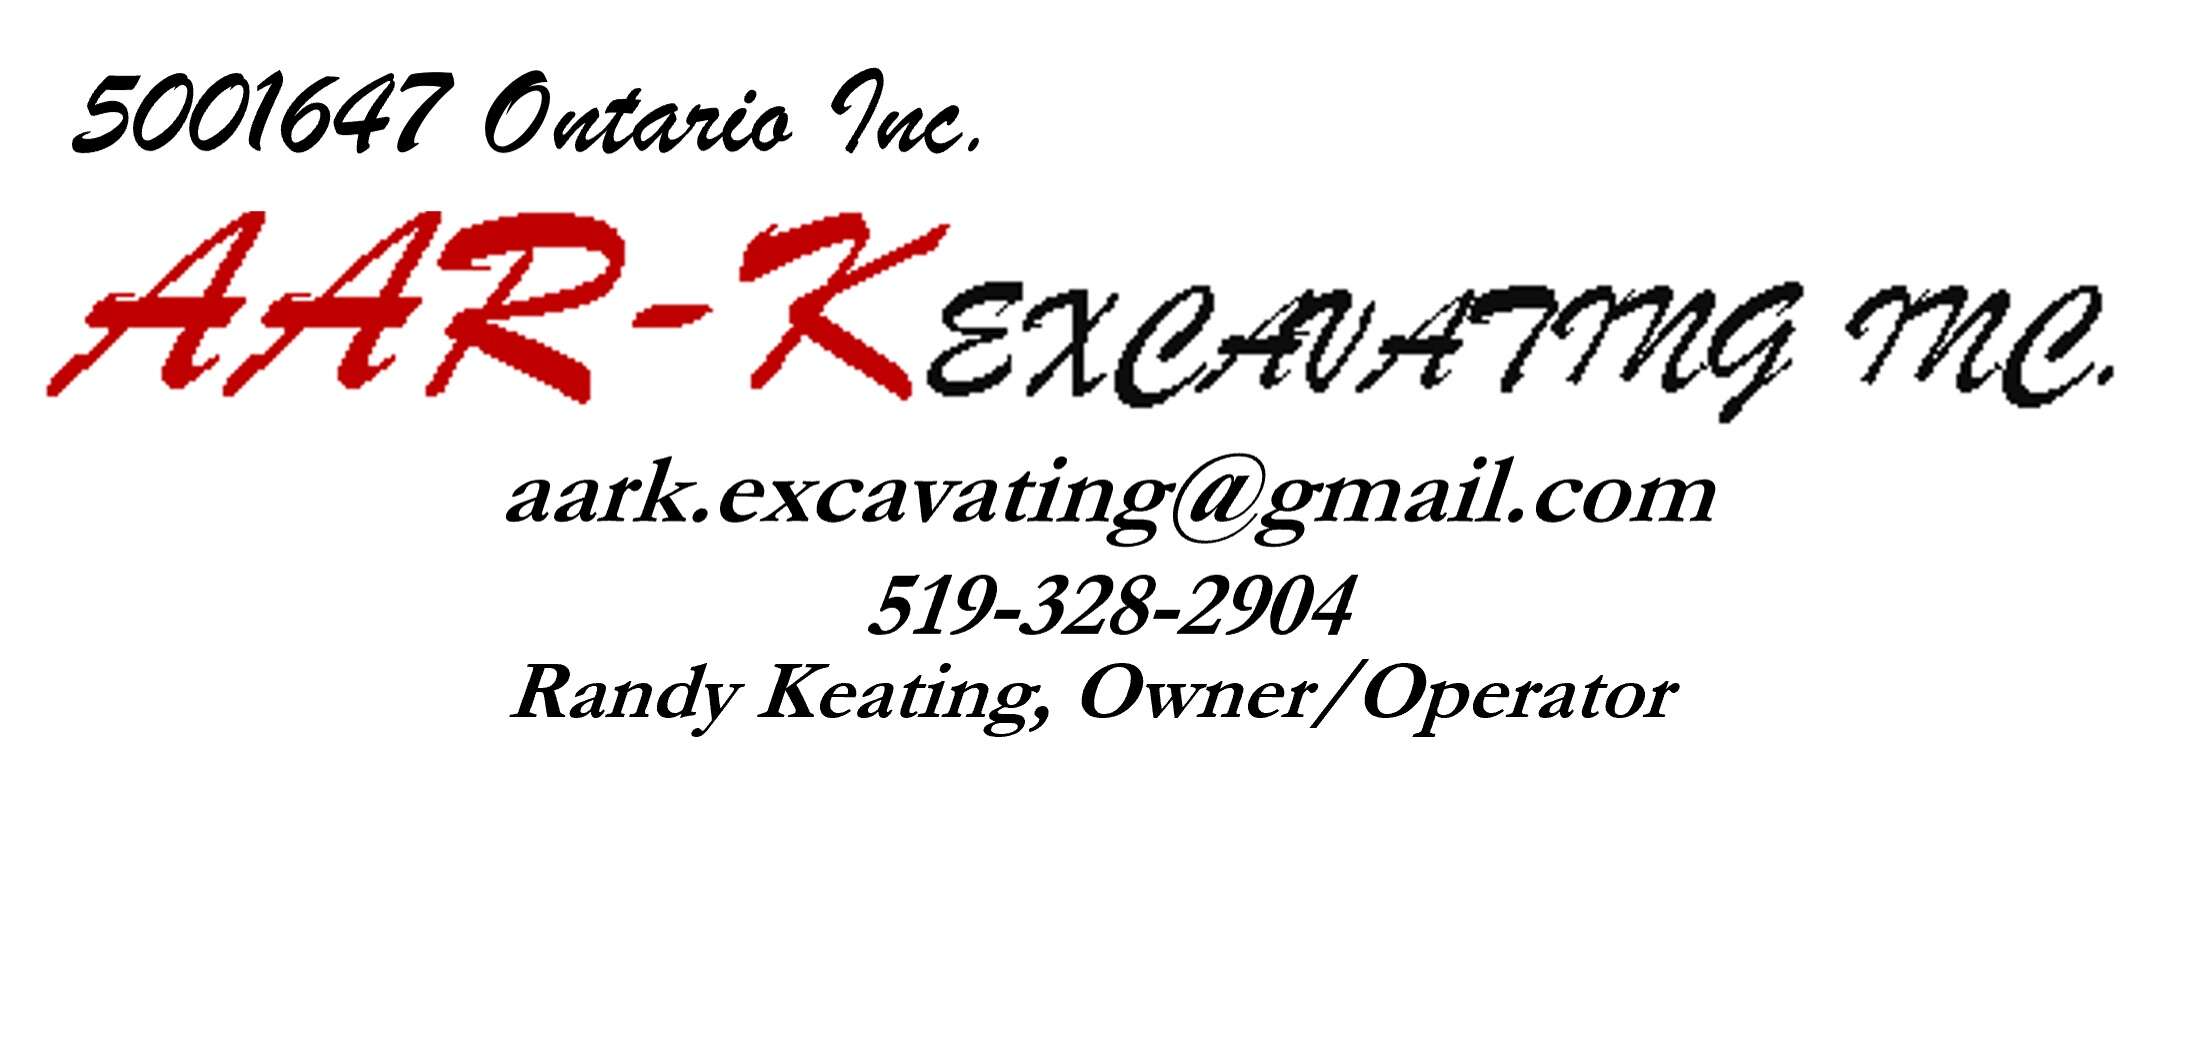 AAR-K Excavating Inc.